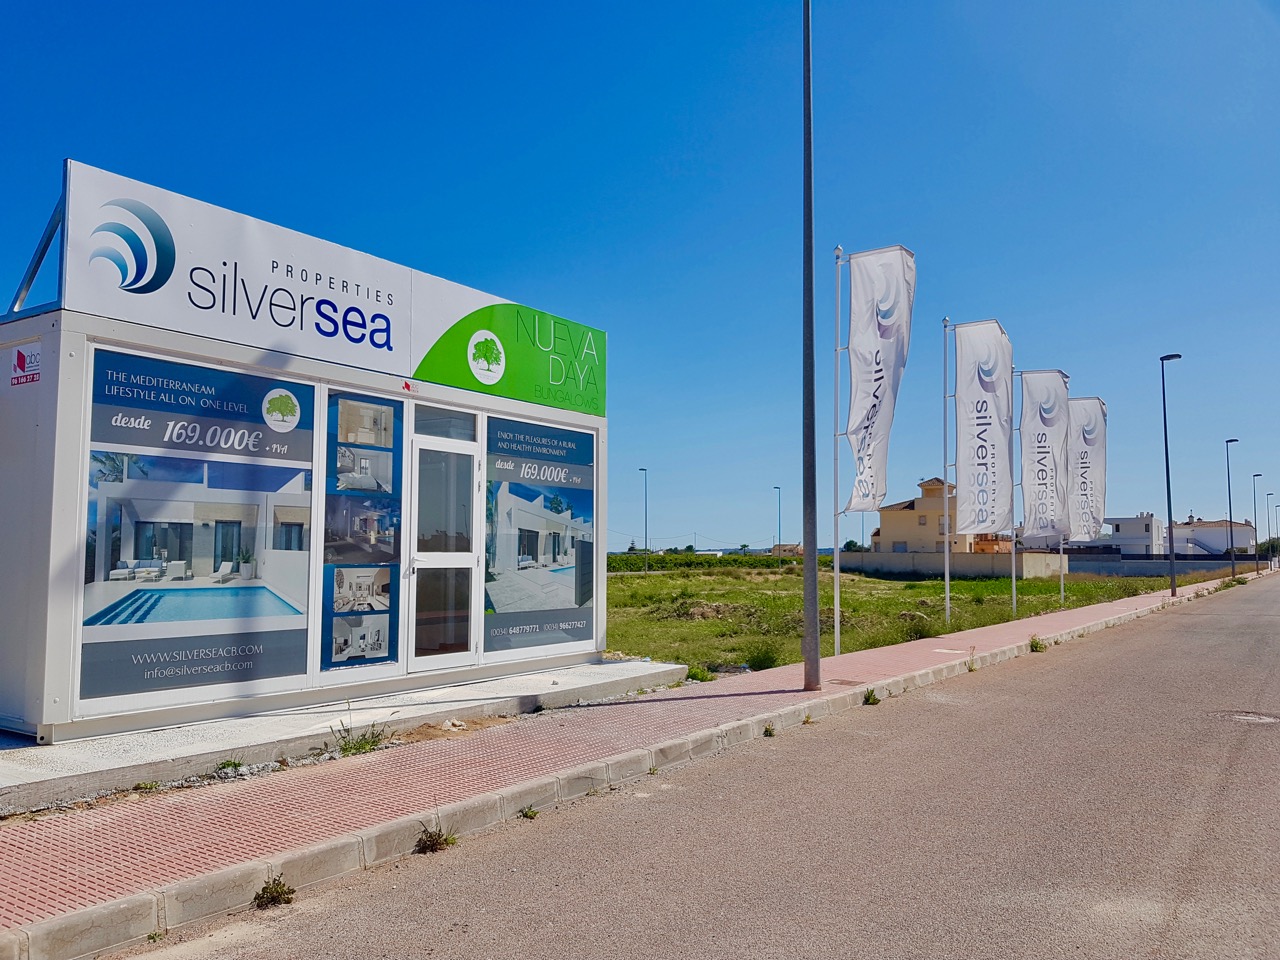 Silversea Promociones Nueva Daya Development